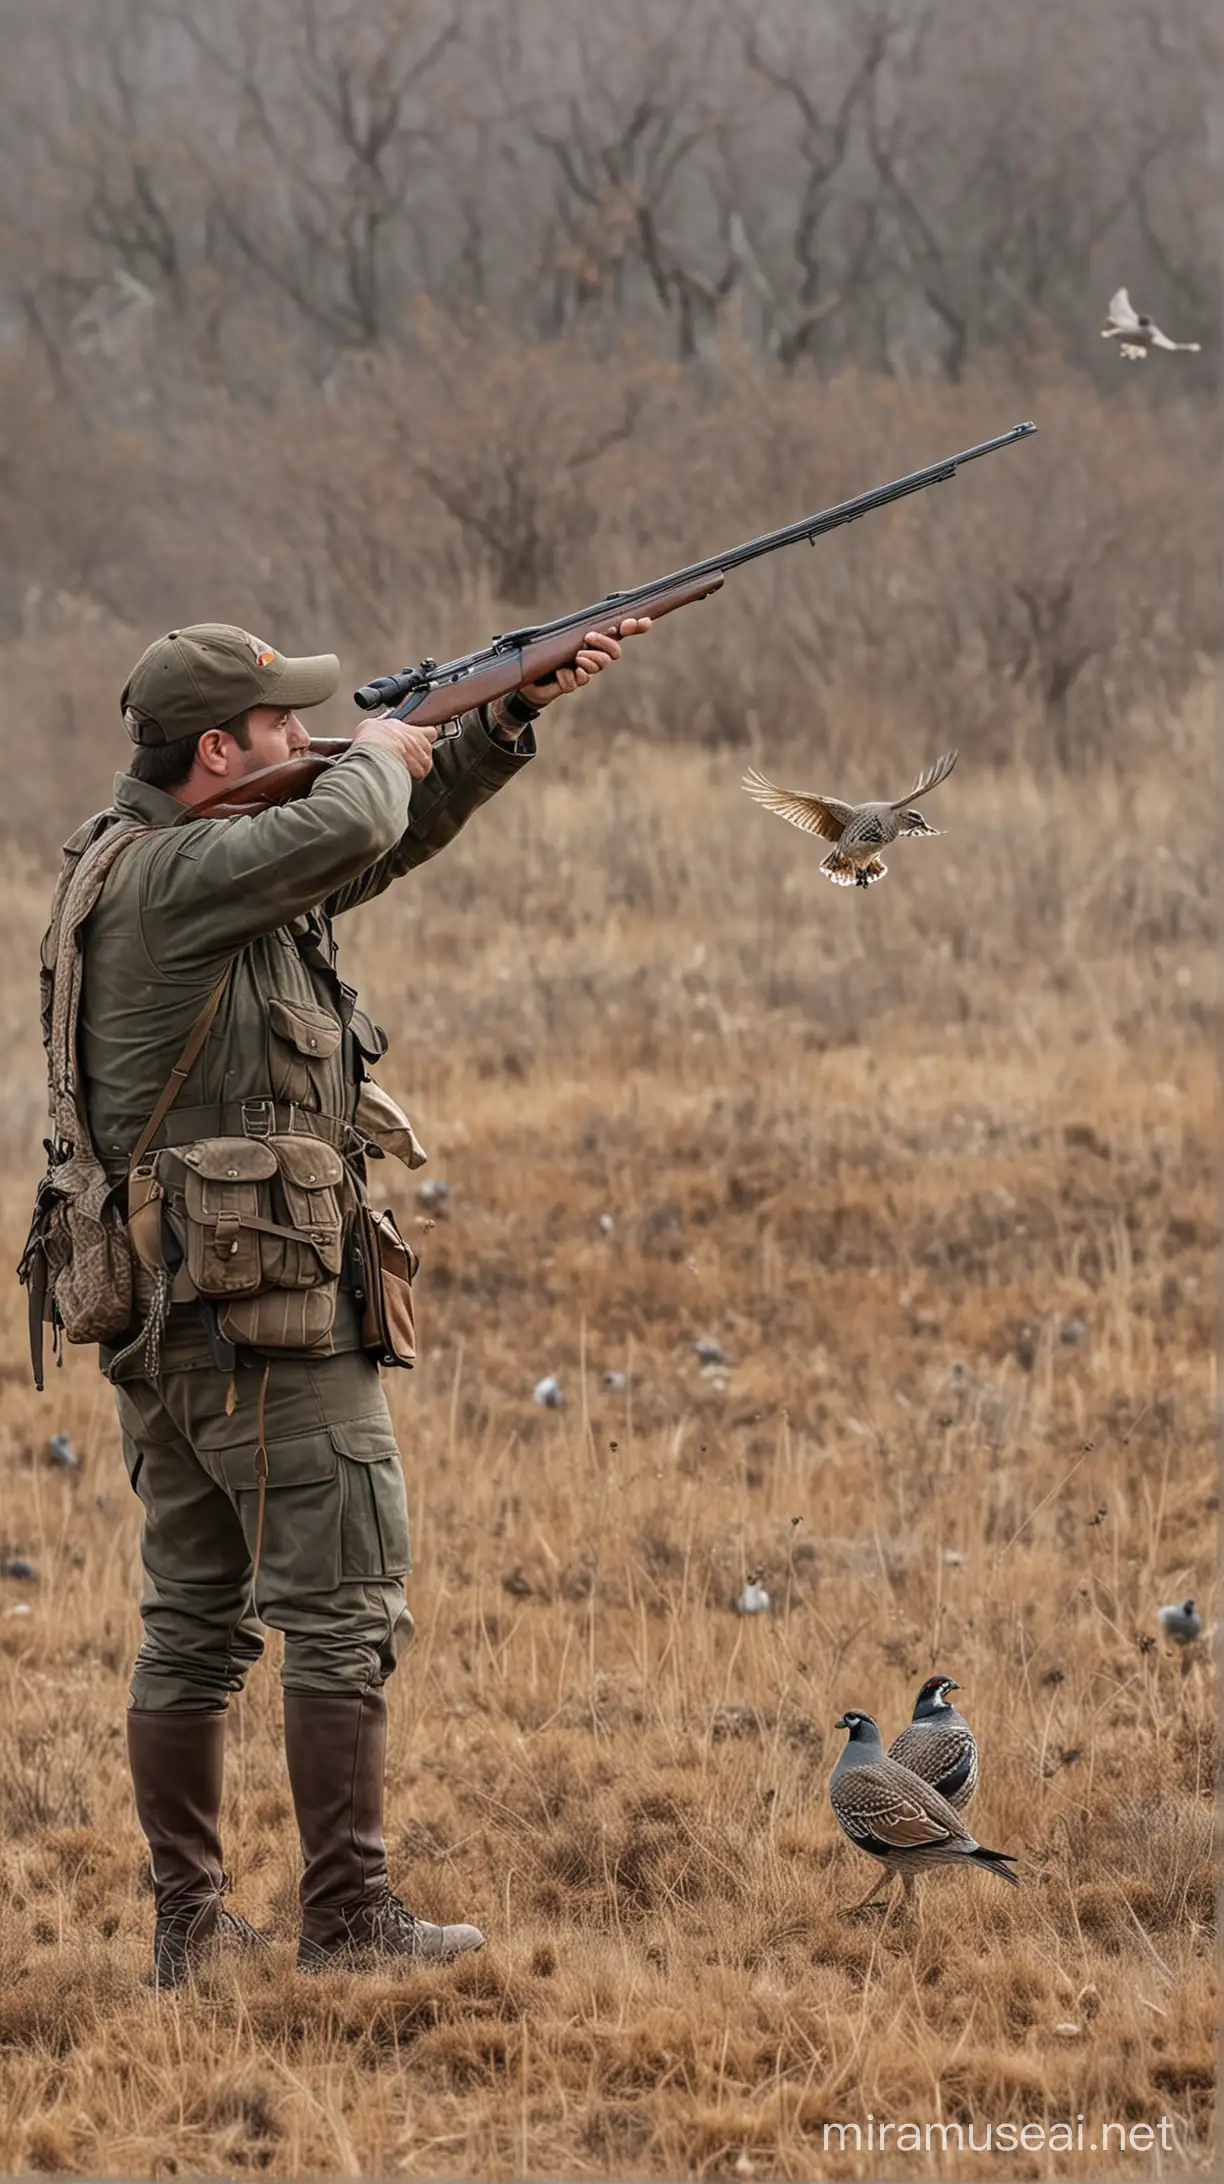 A hunter aims at a flying quail